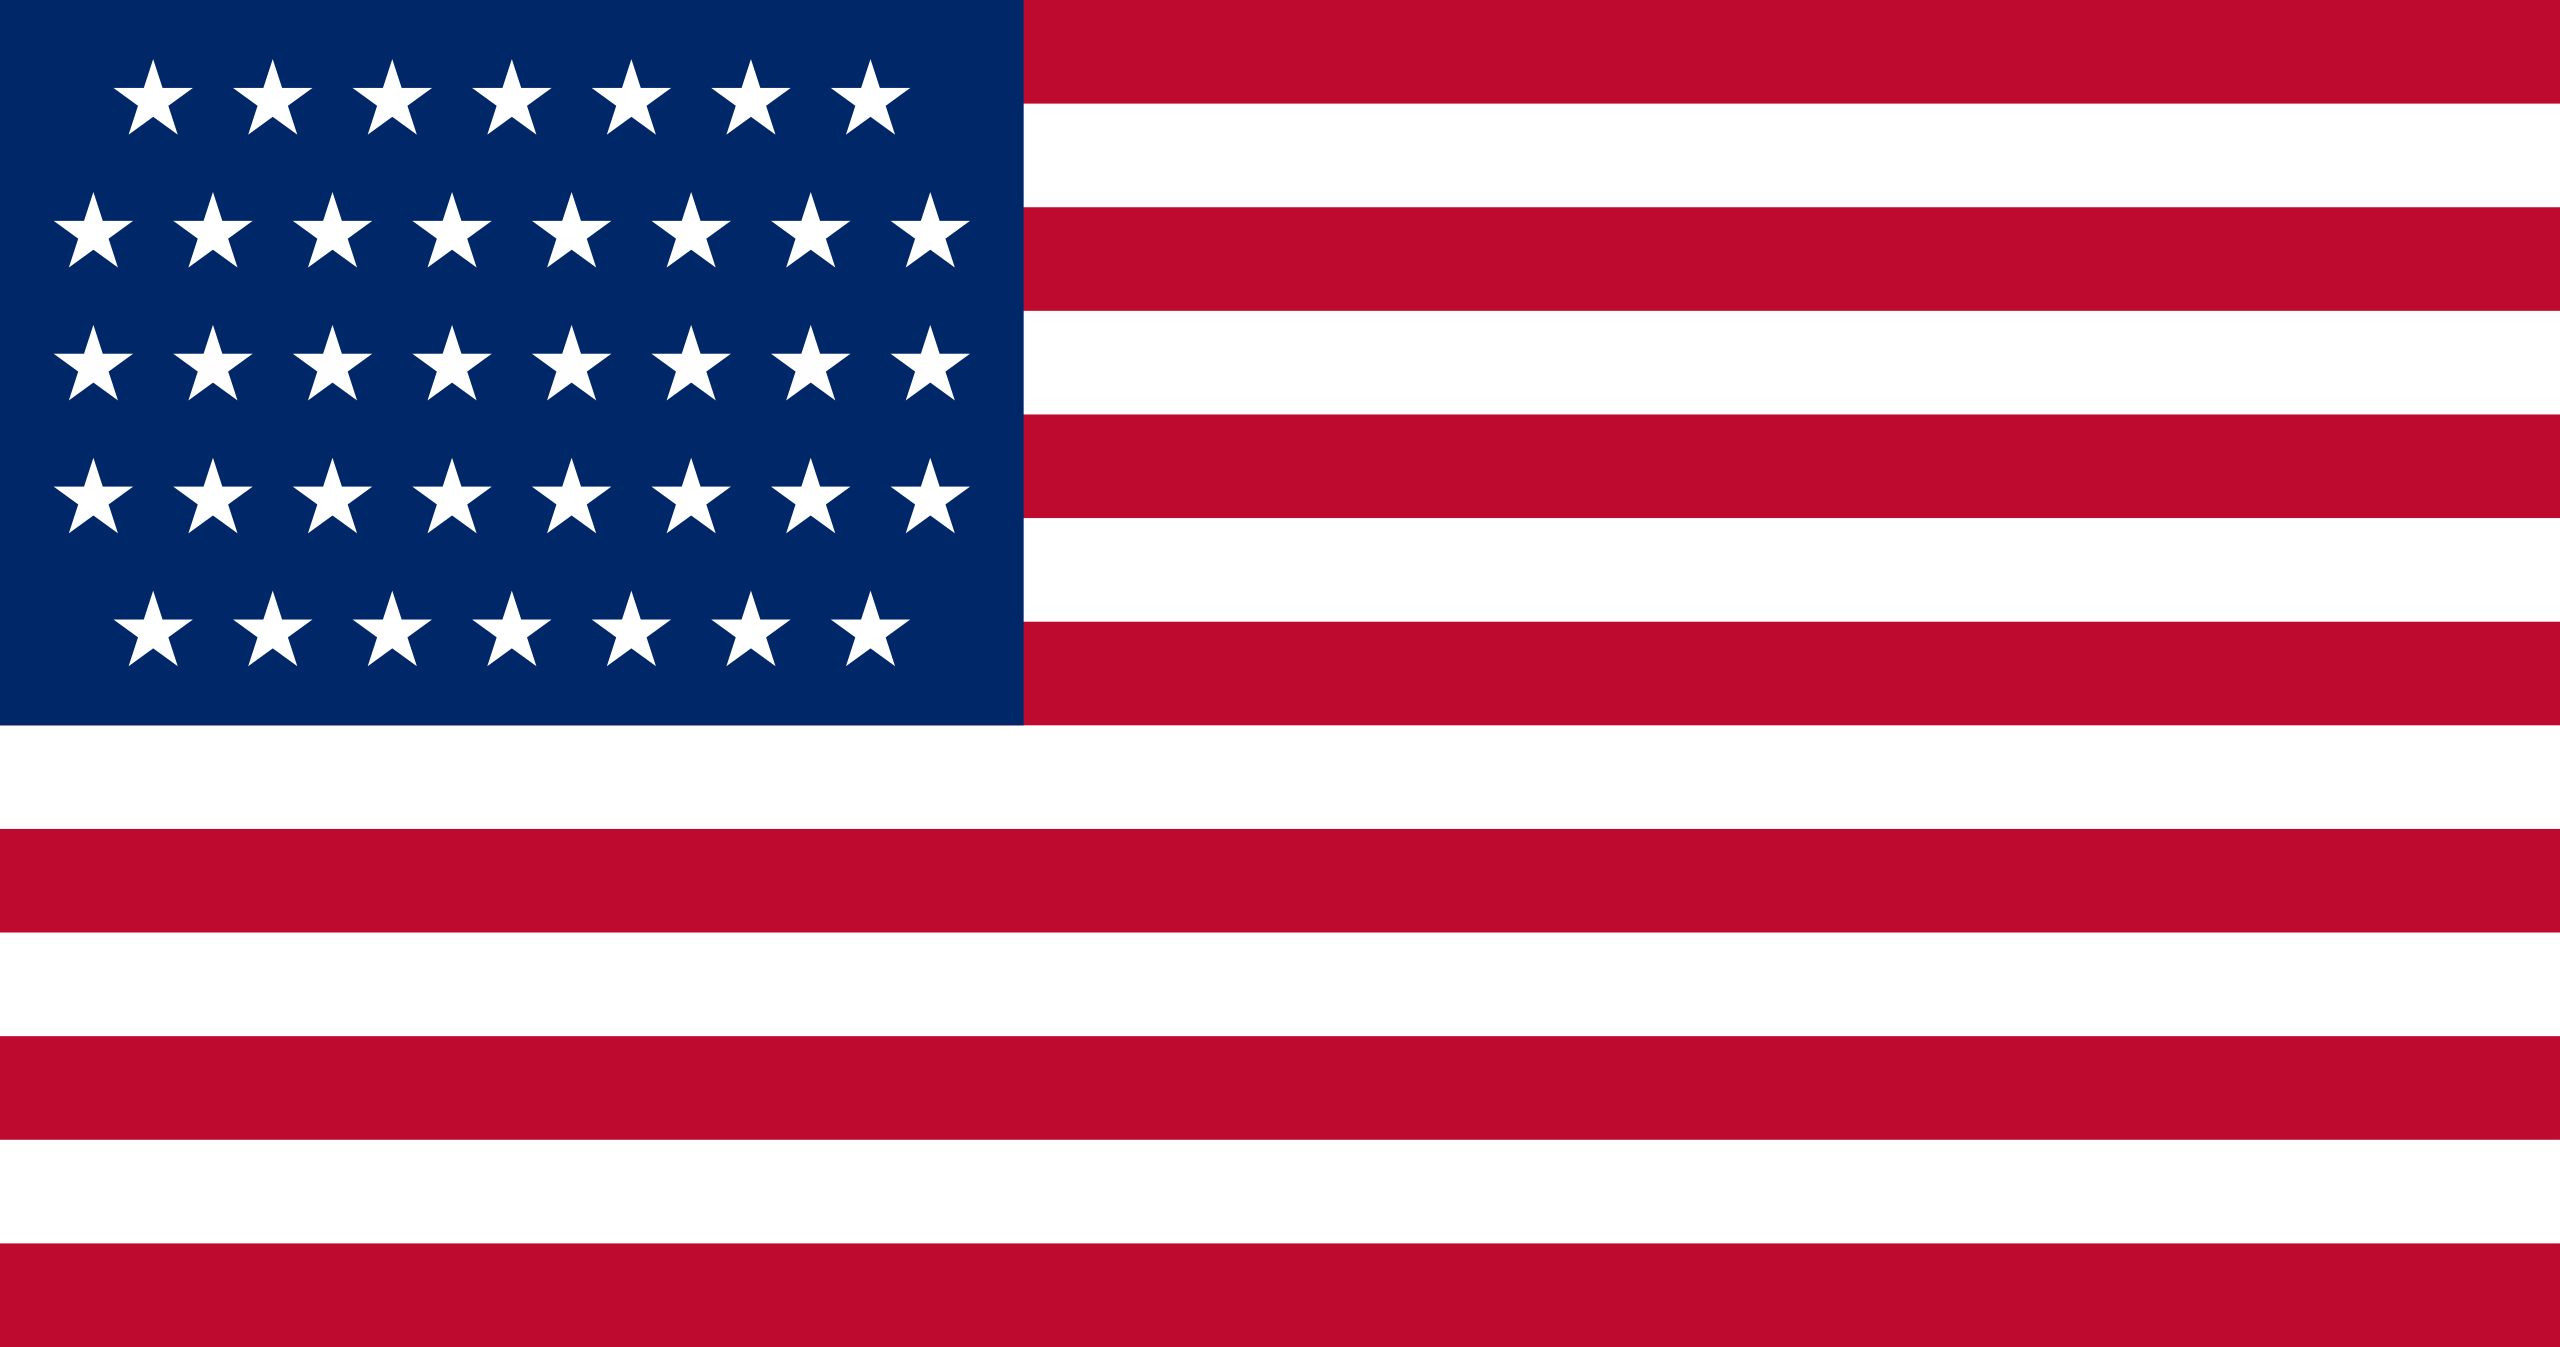 us-flag